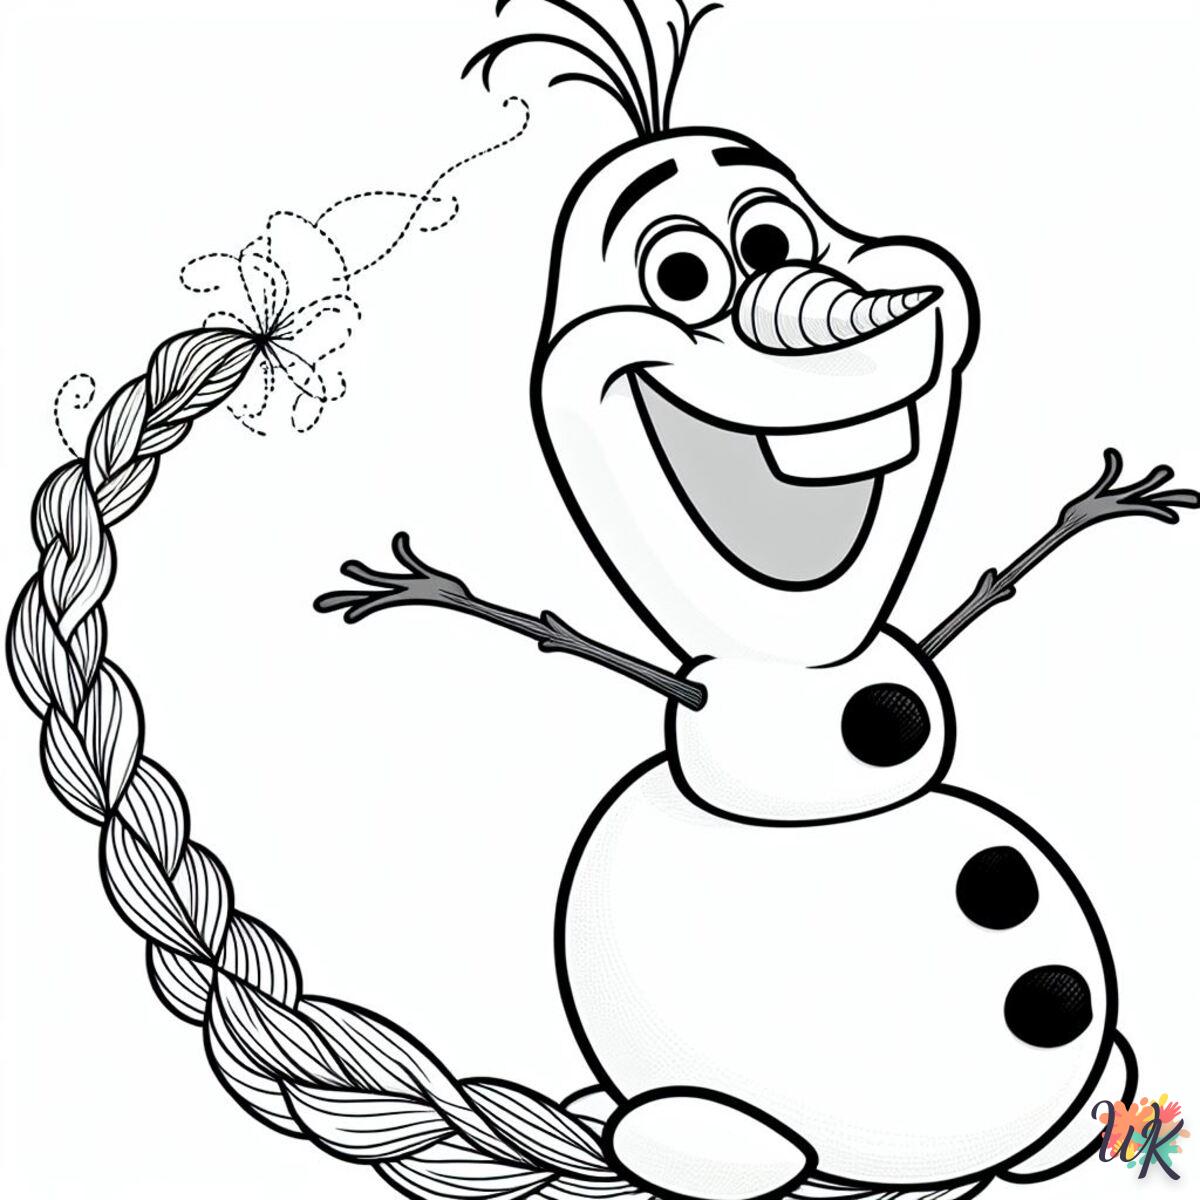 D’OLAF